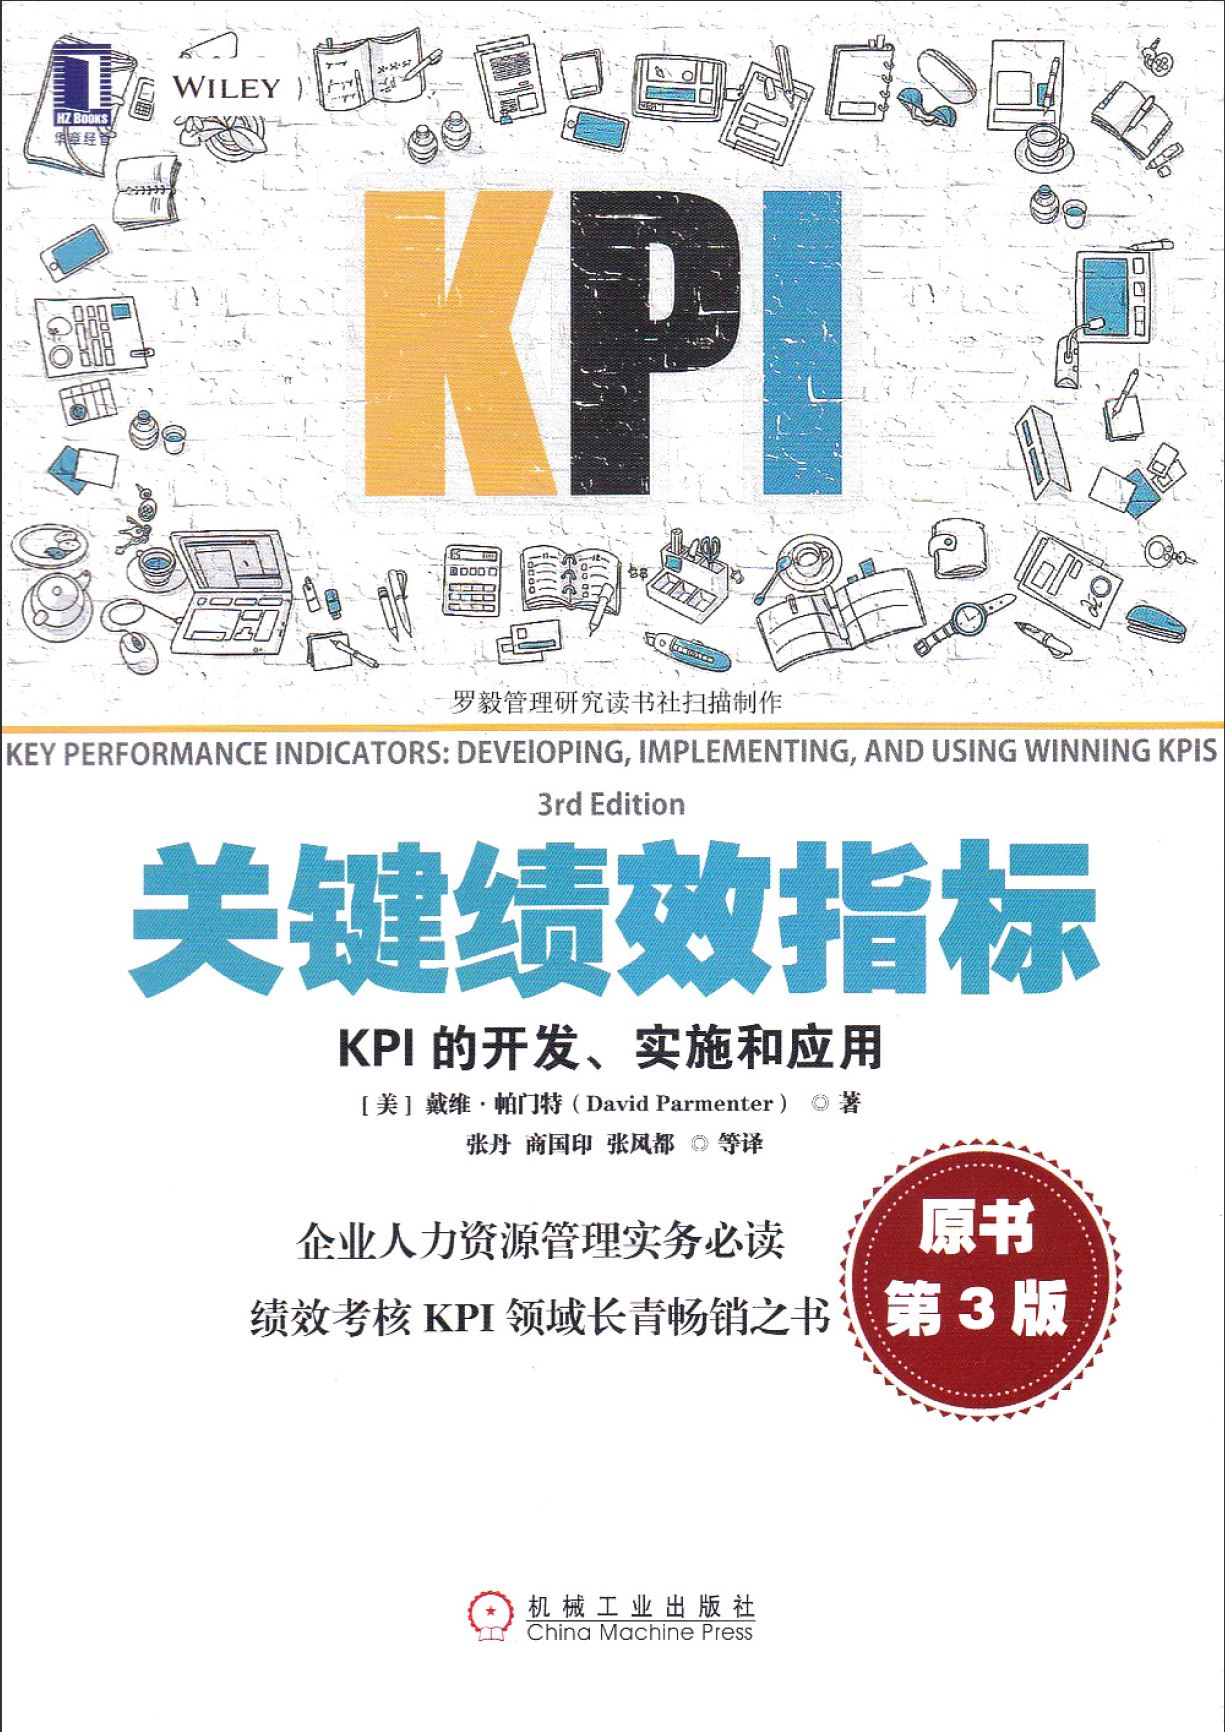 关键绩效指标 kpi的开发、实施和应用 原书第3版